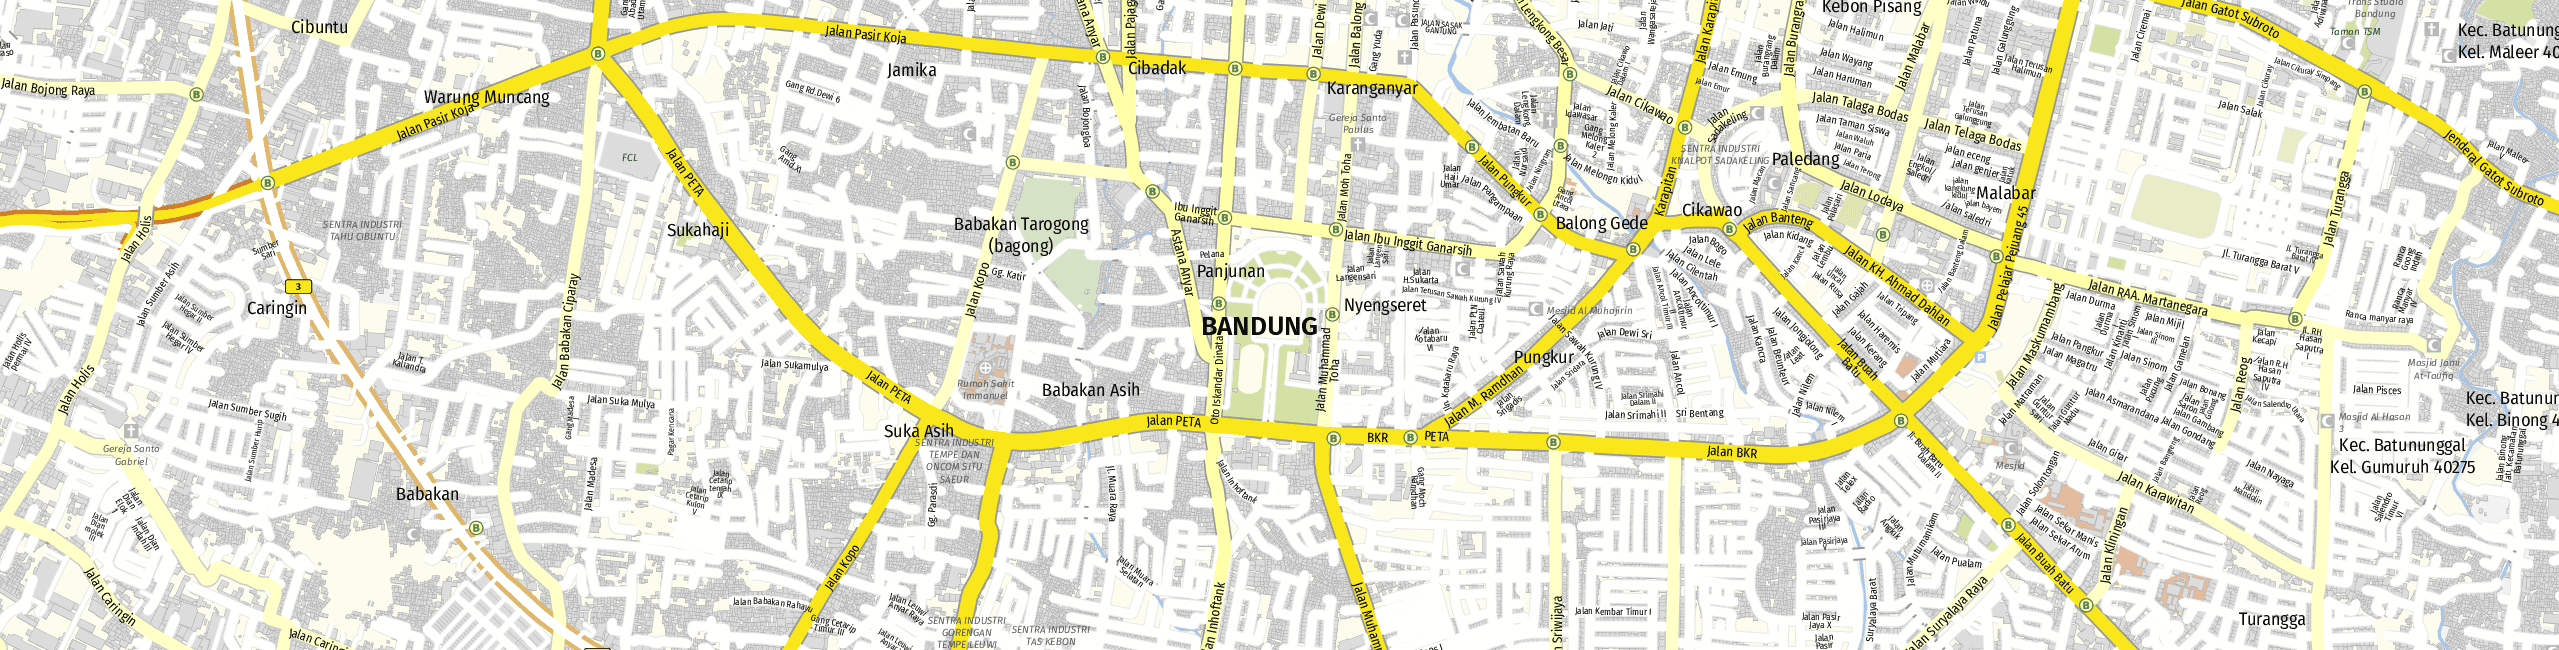 Stadtplan Bandung zum Downloaden.